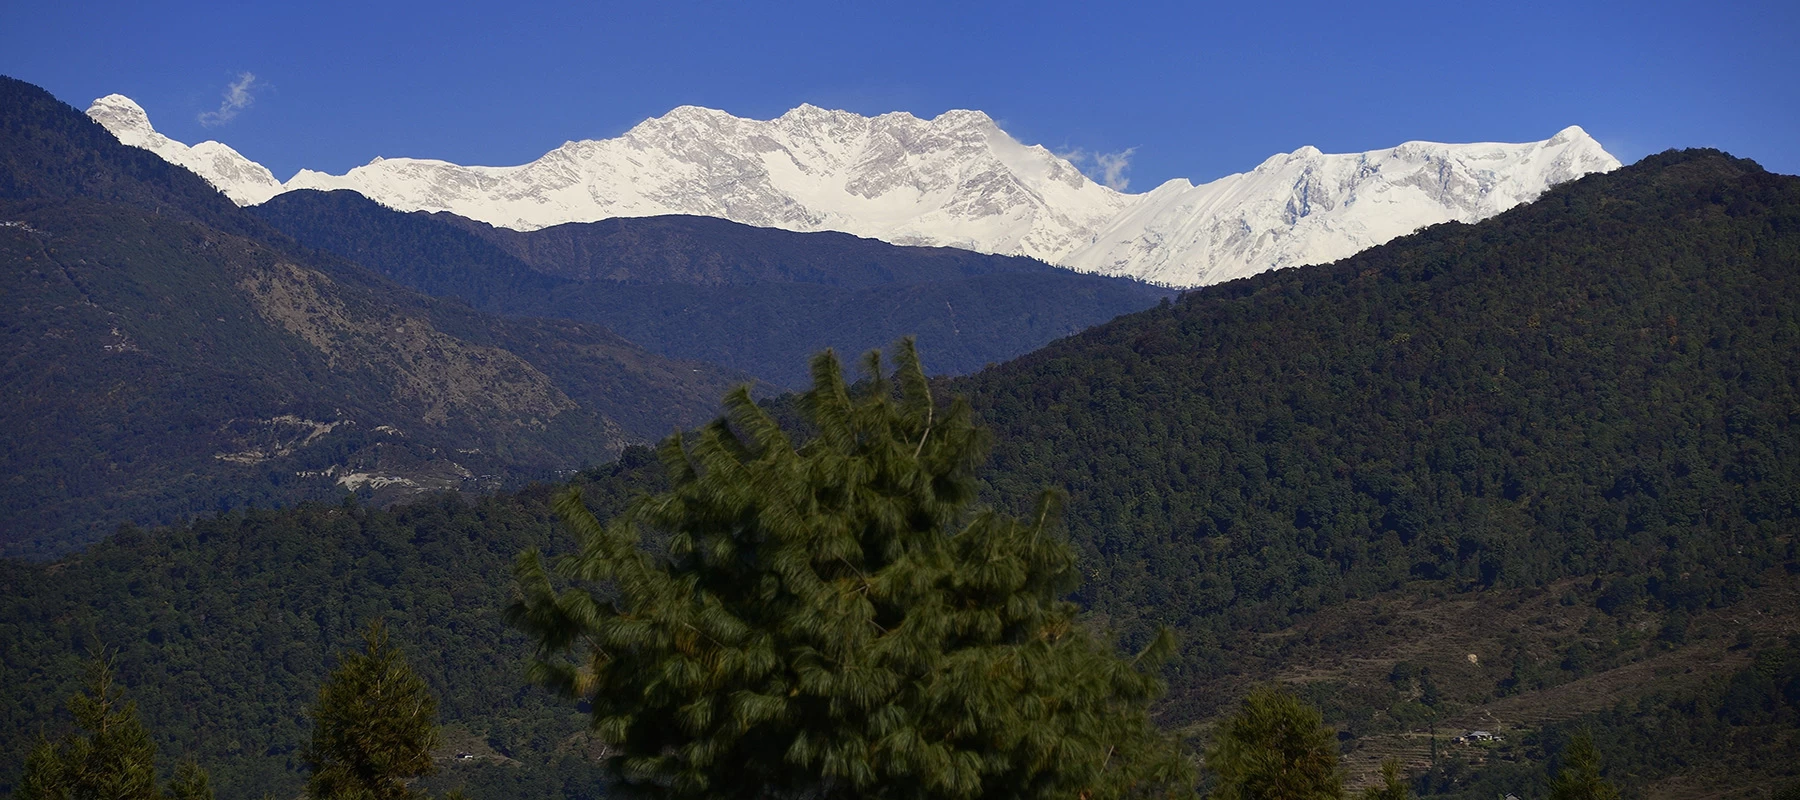  Kanchenjunga Panorama View 